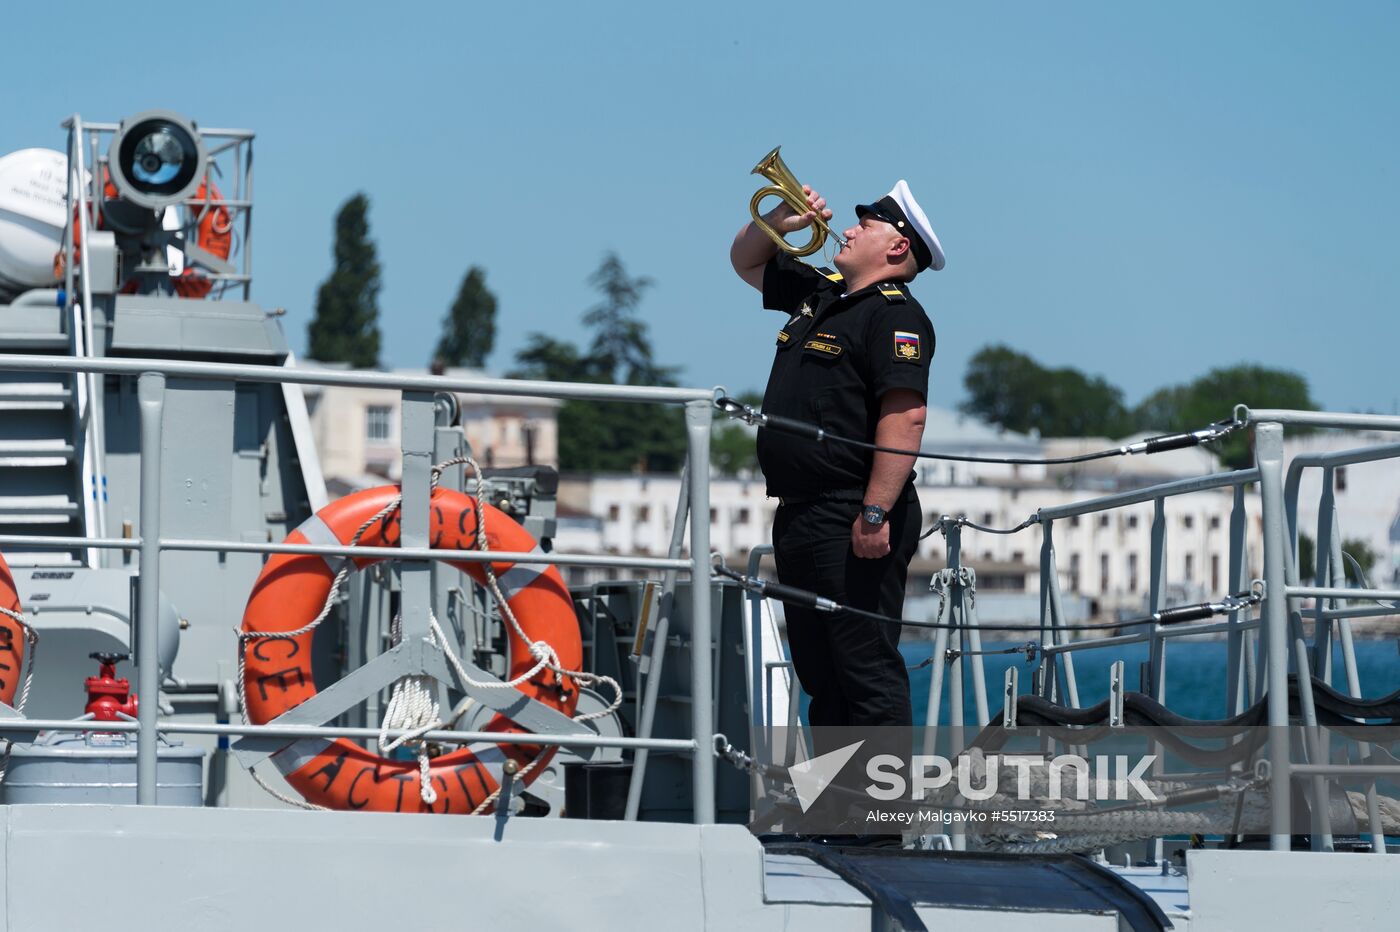 Vyshny Volochek corvette hoists St. Andrew's flag in Sevastopol